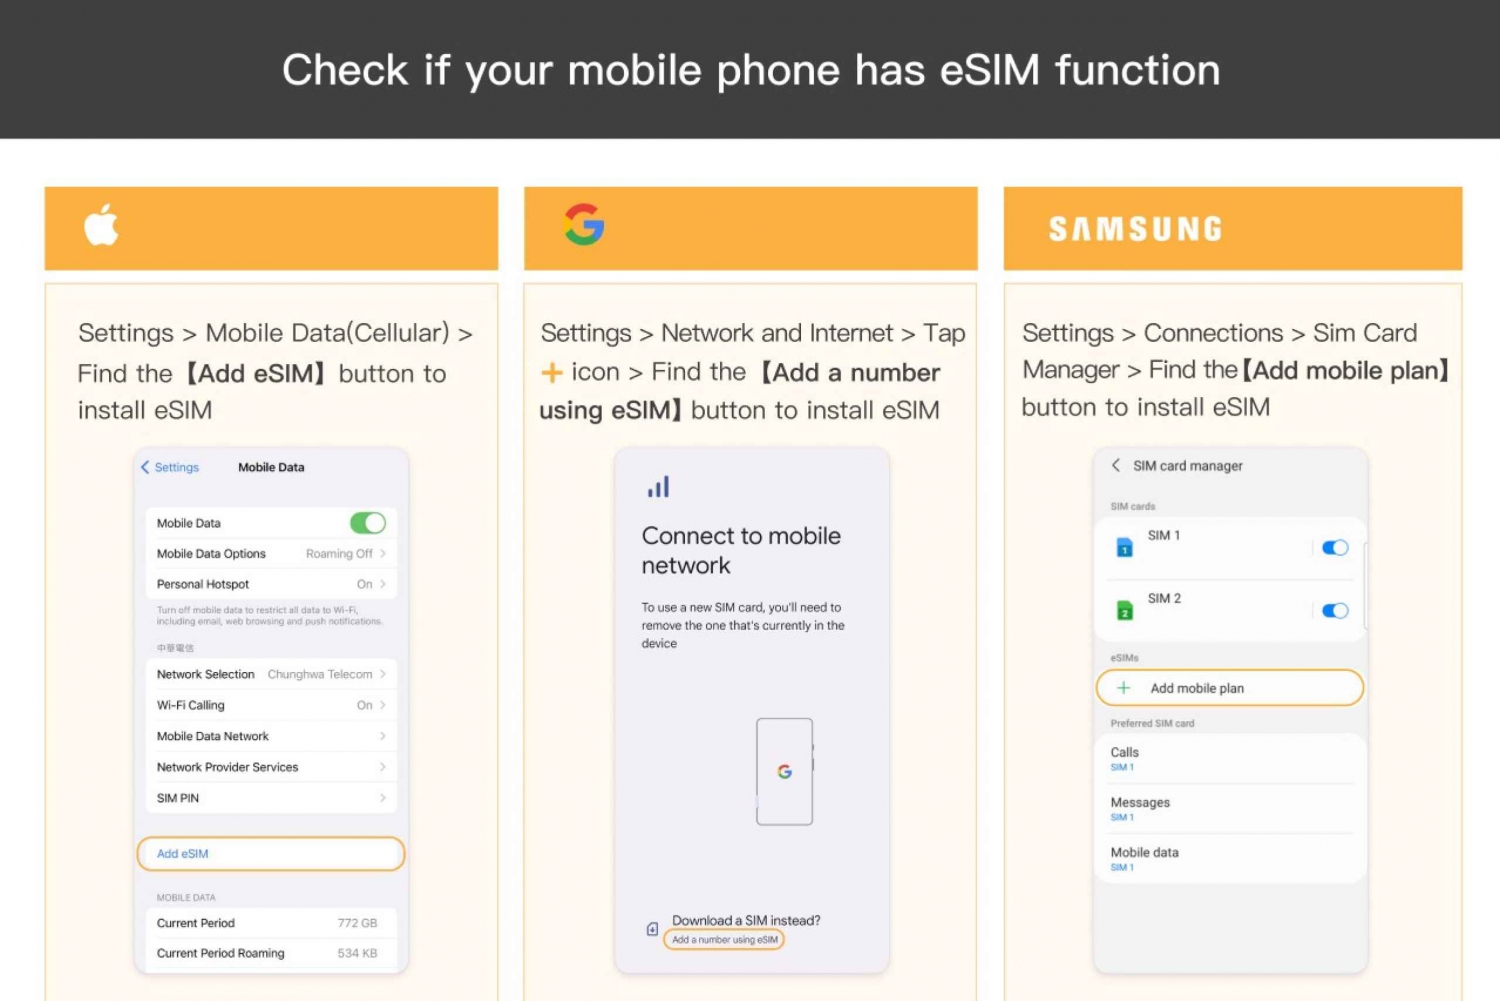 Turkey/Europe: eSim Mobile Data Plan